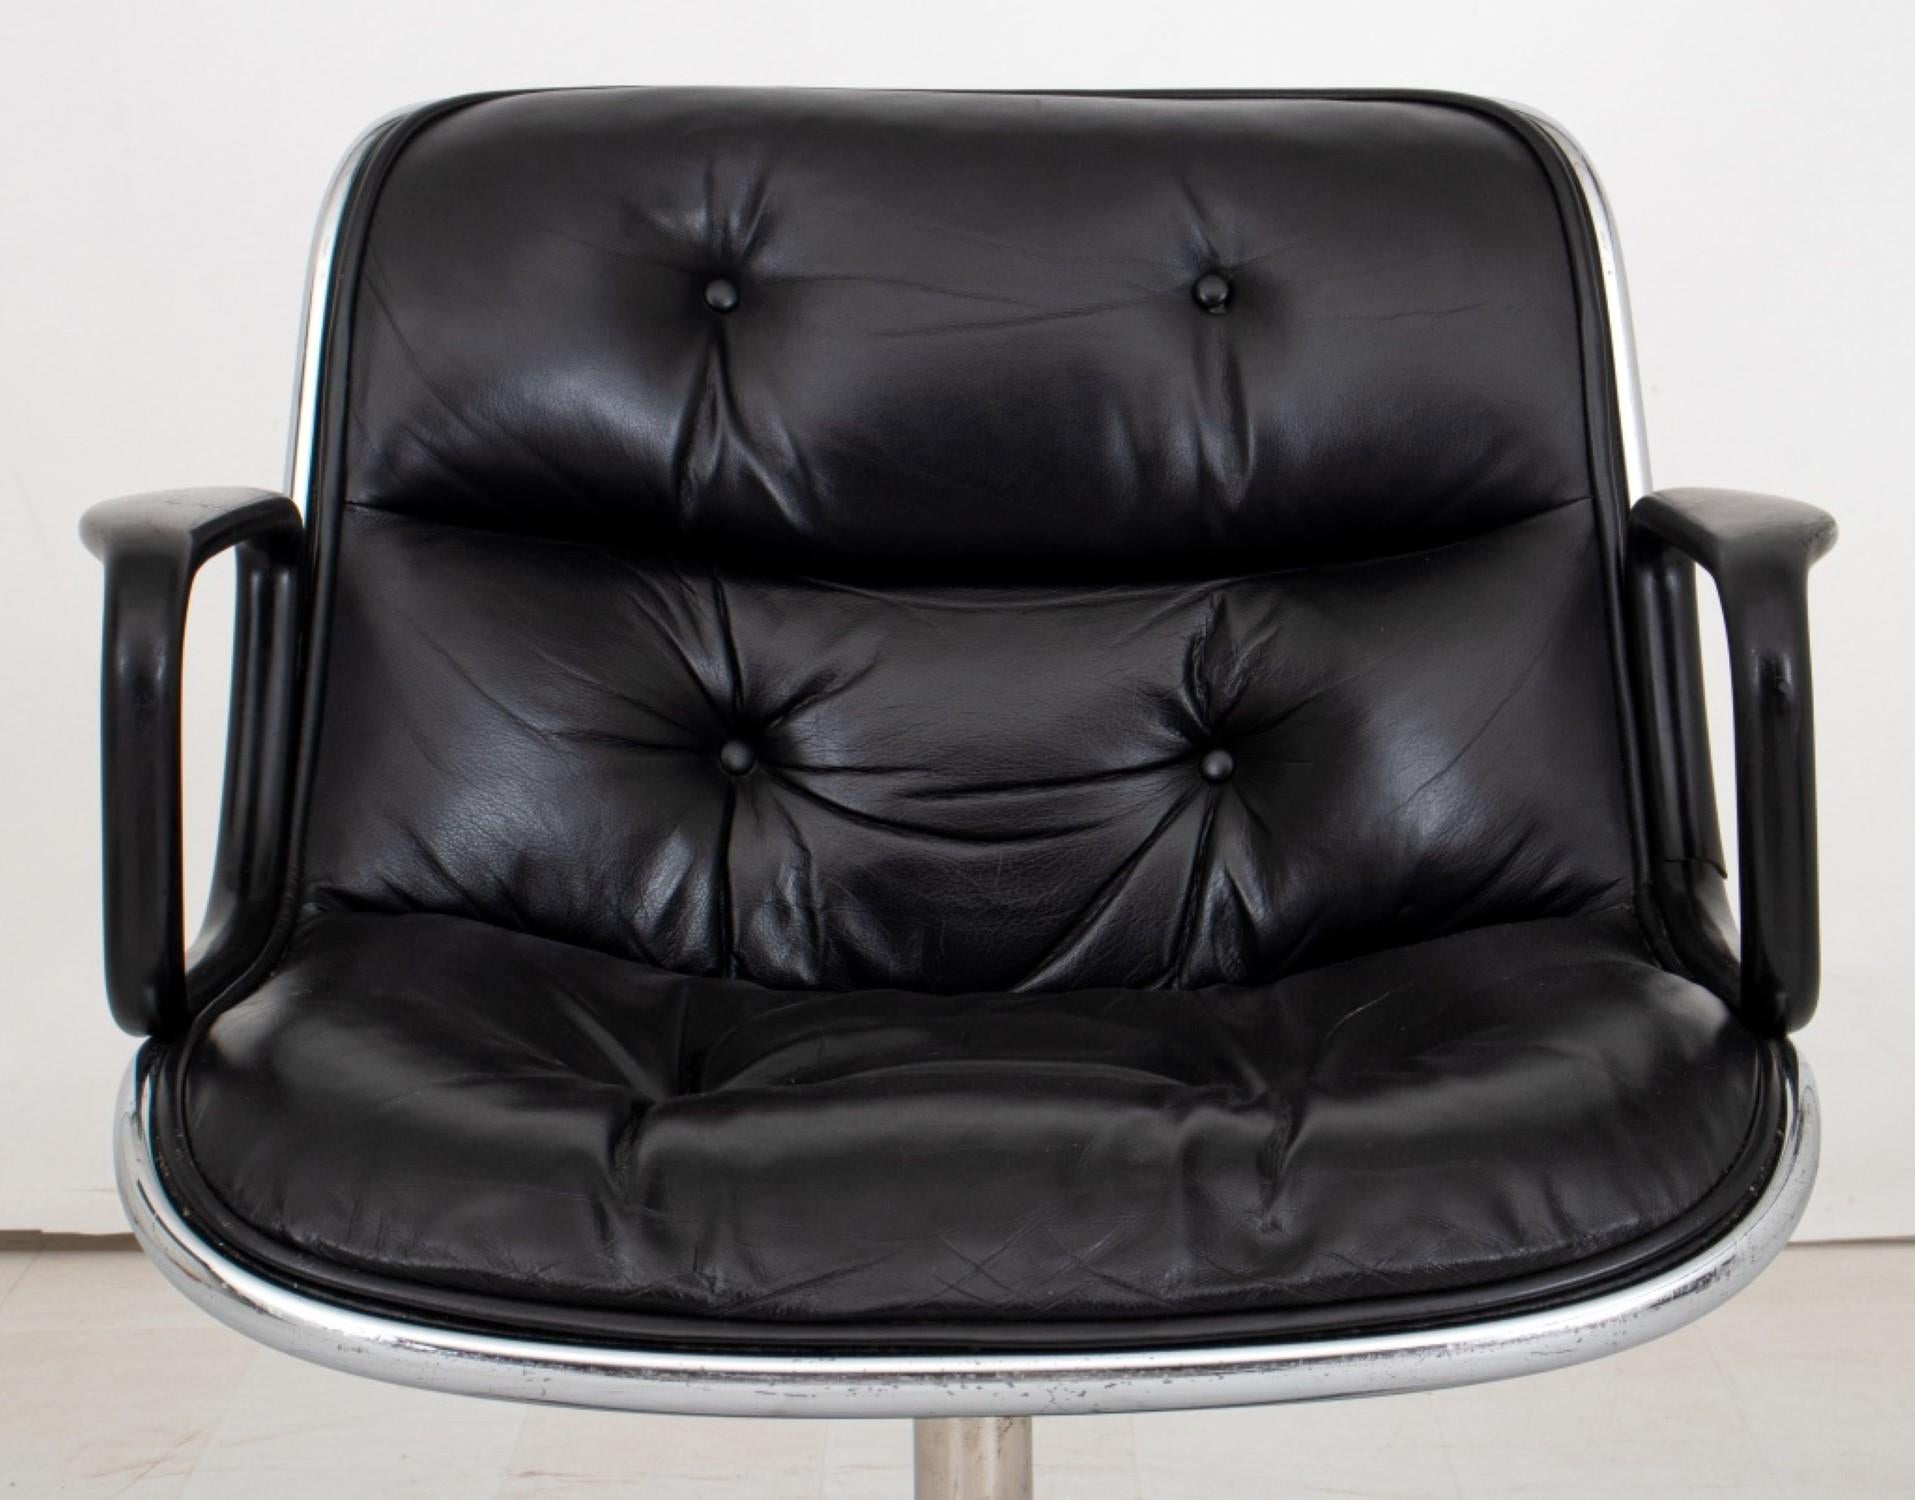 Chaise de bureau Pollock pour Knoll International :
Chaise de bureau Charles Pollock pour Knoll International (1963)
Design/One : Assise et dossier en cuir noir capitonné sur une base chromée à quatre roulettes.
Dimensions : 32.25